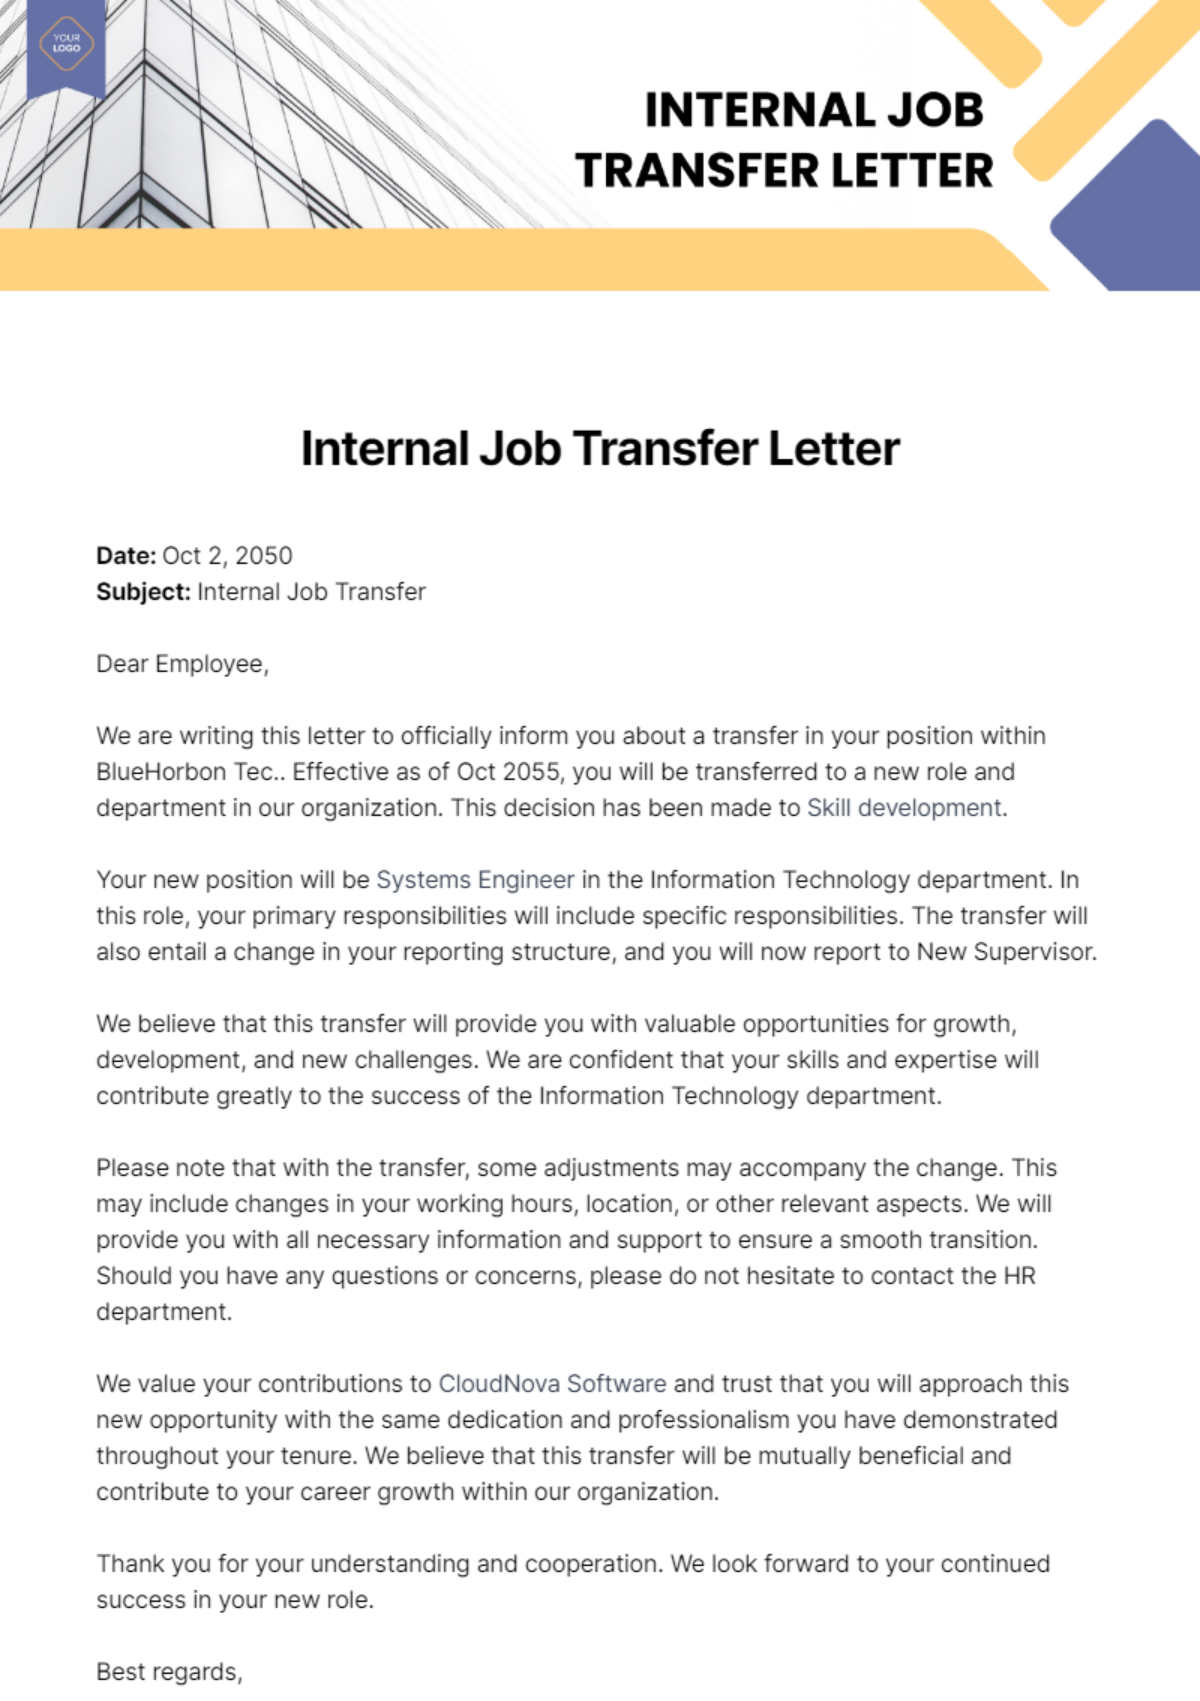 Internal Job Transfer Letter Template